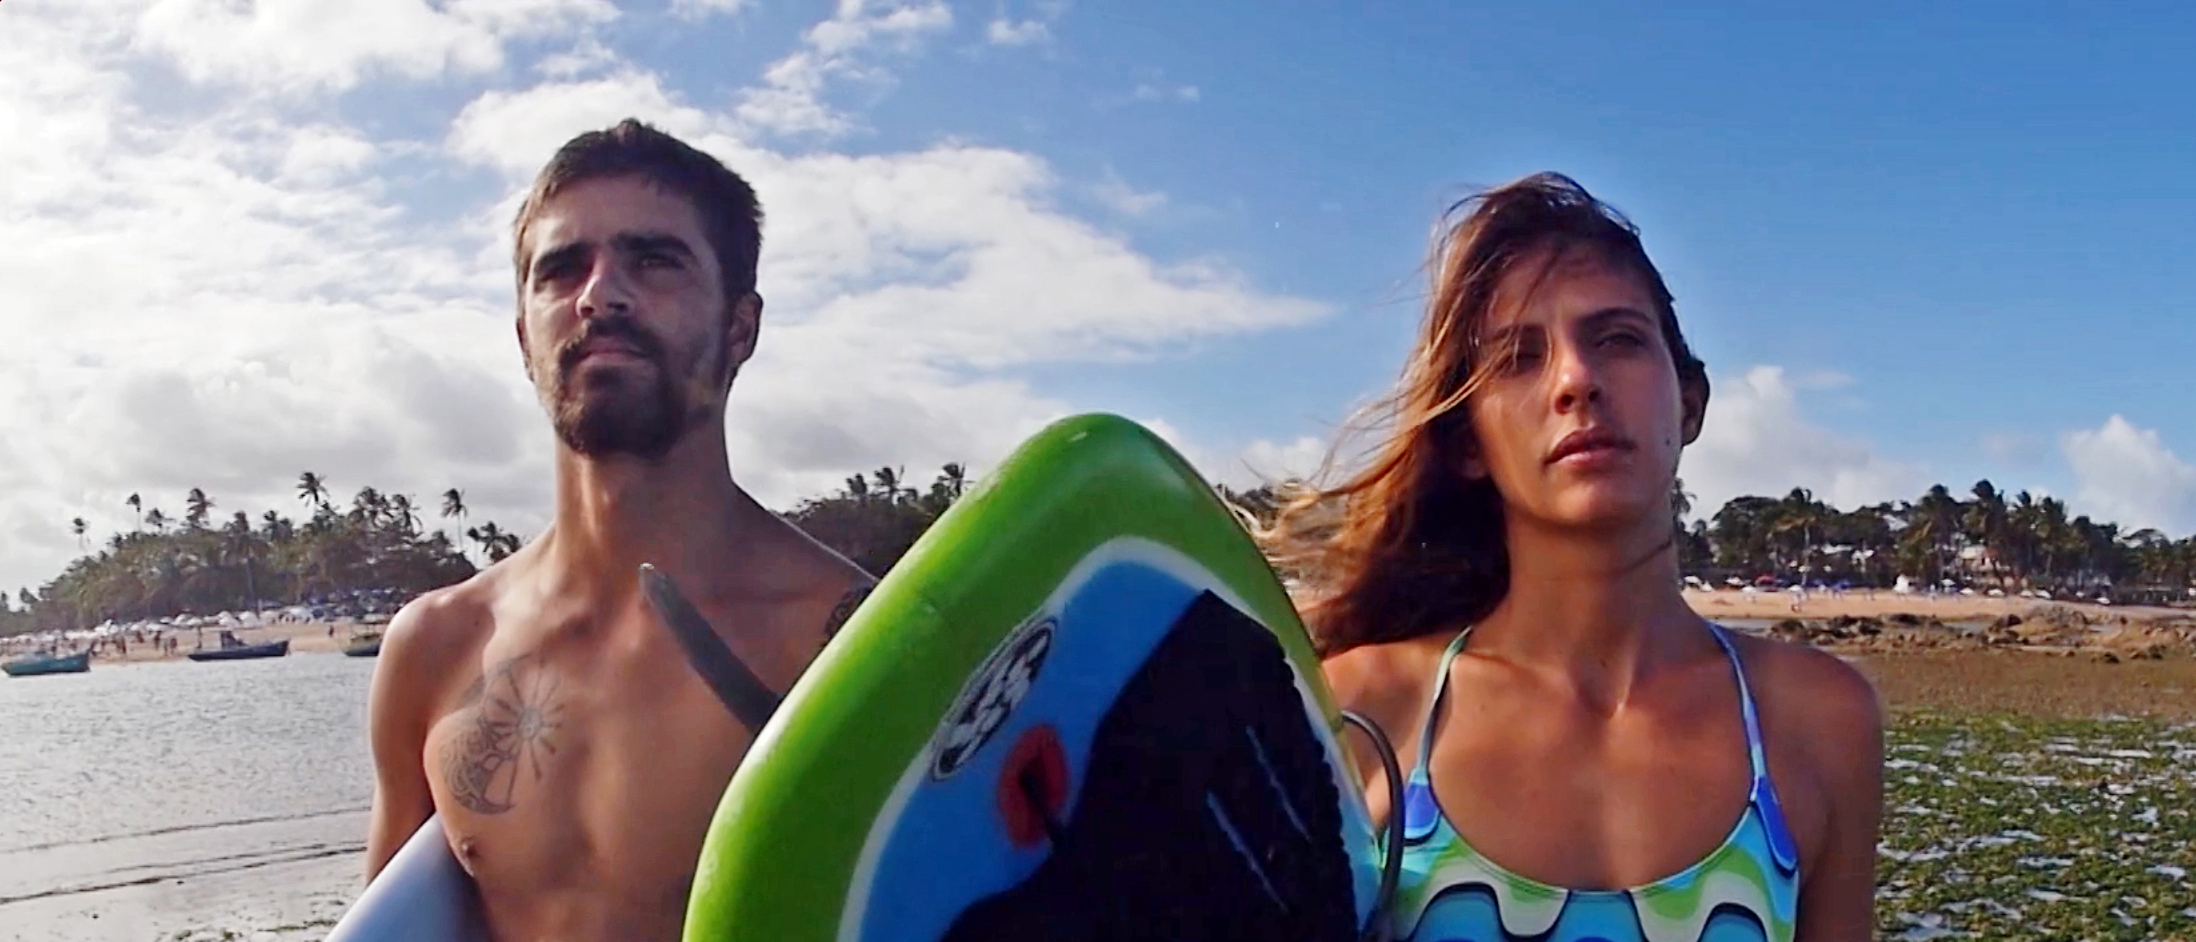 ‘Amor, o mar subiu’, revela as aventuras de casal surfista de ondas grandes